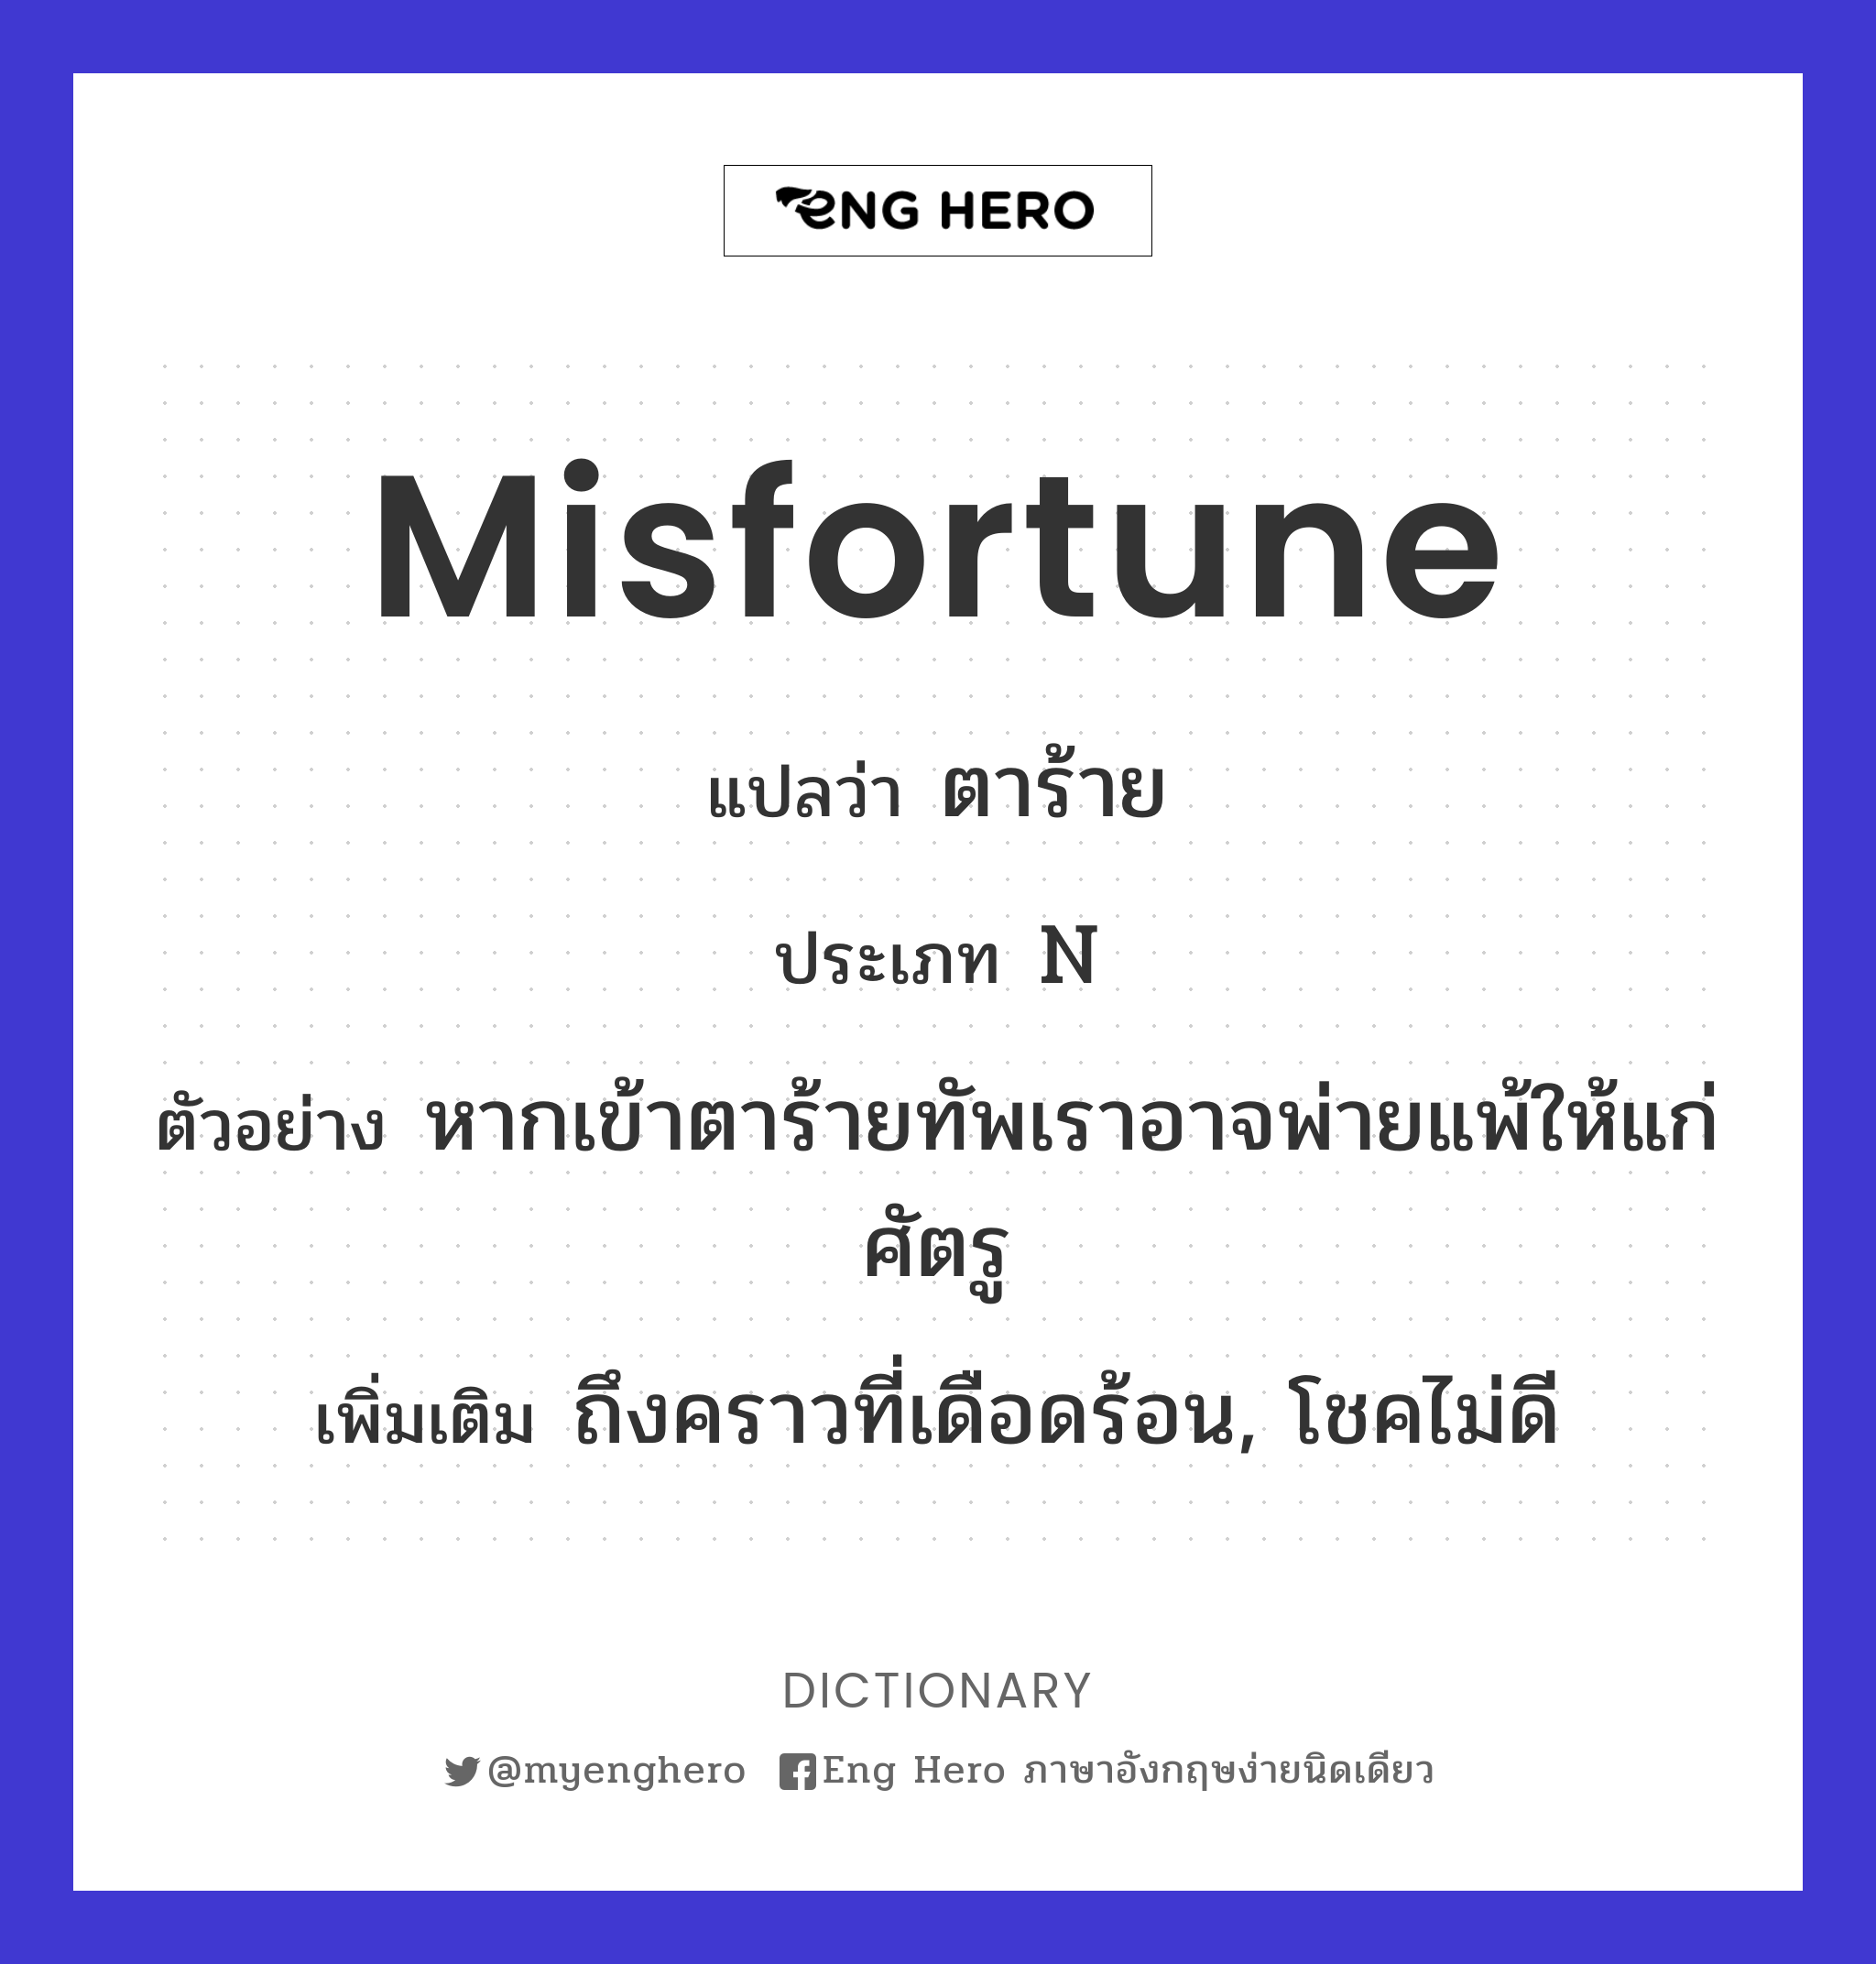 misfortune